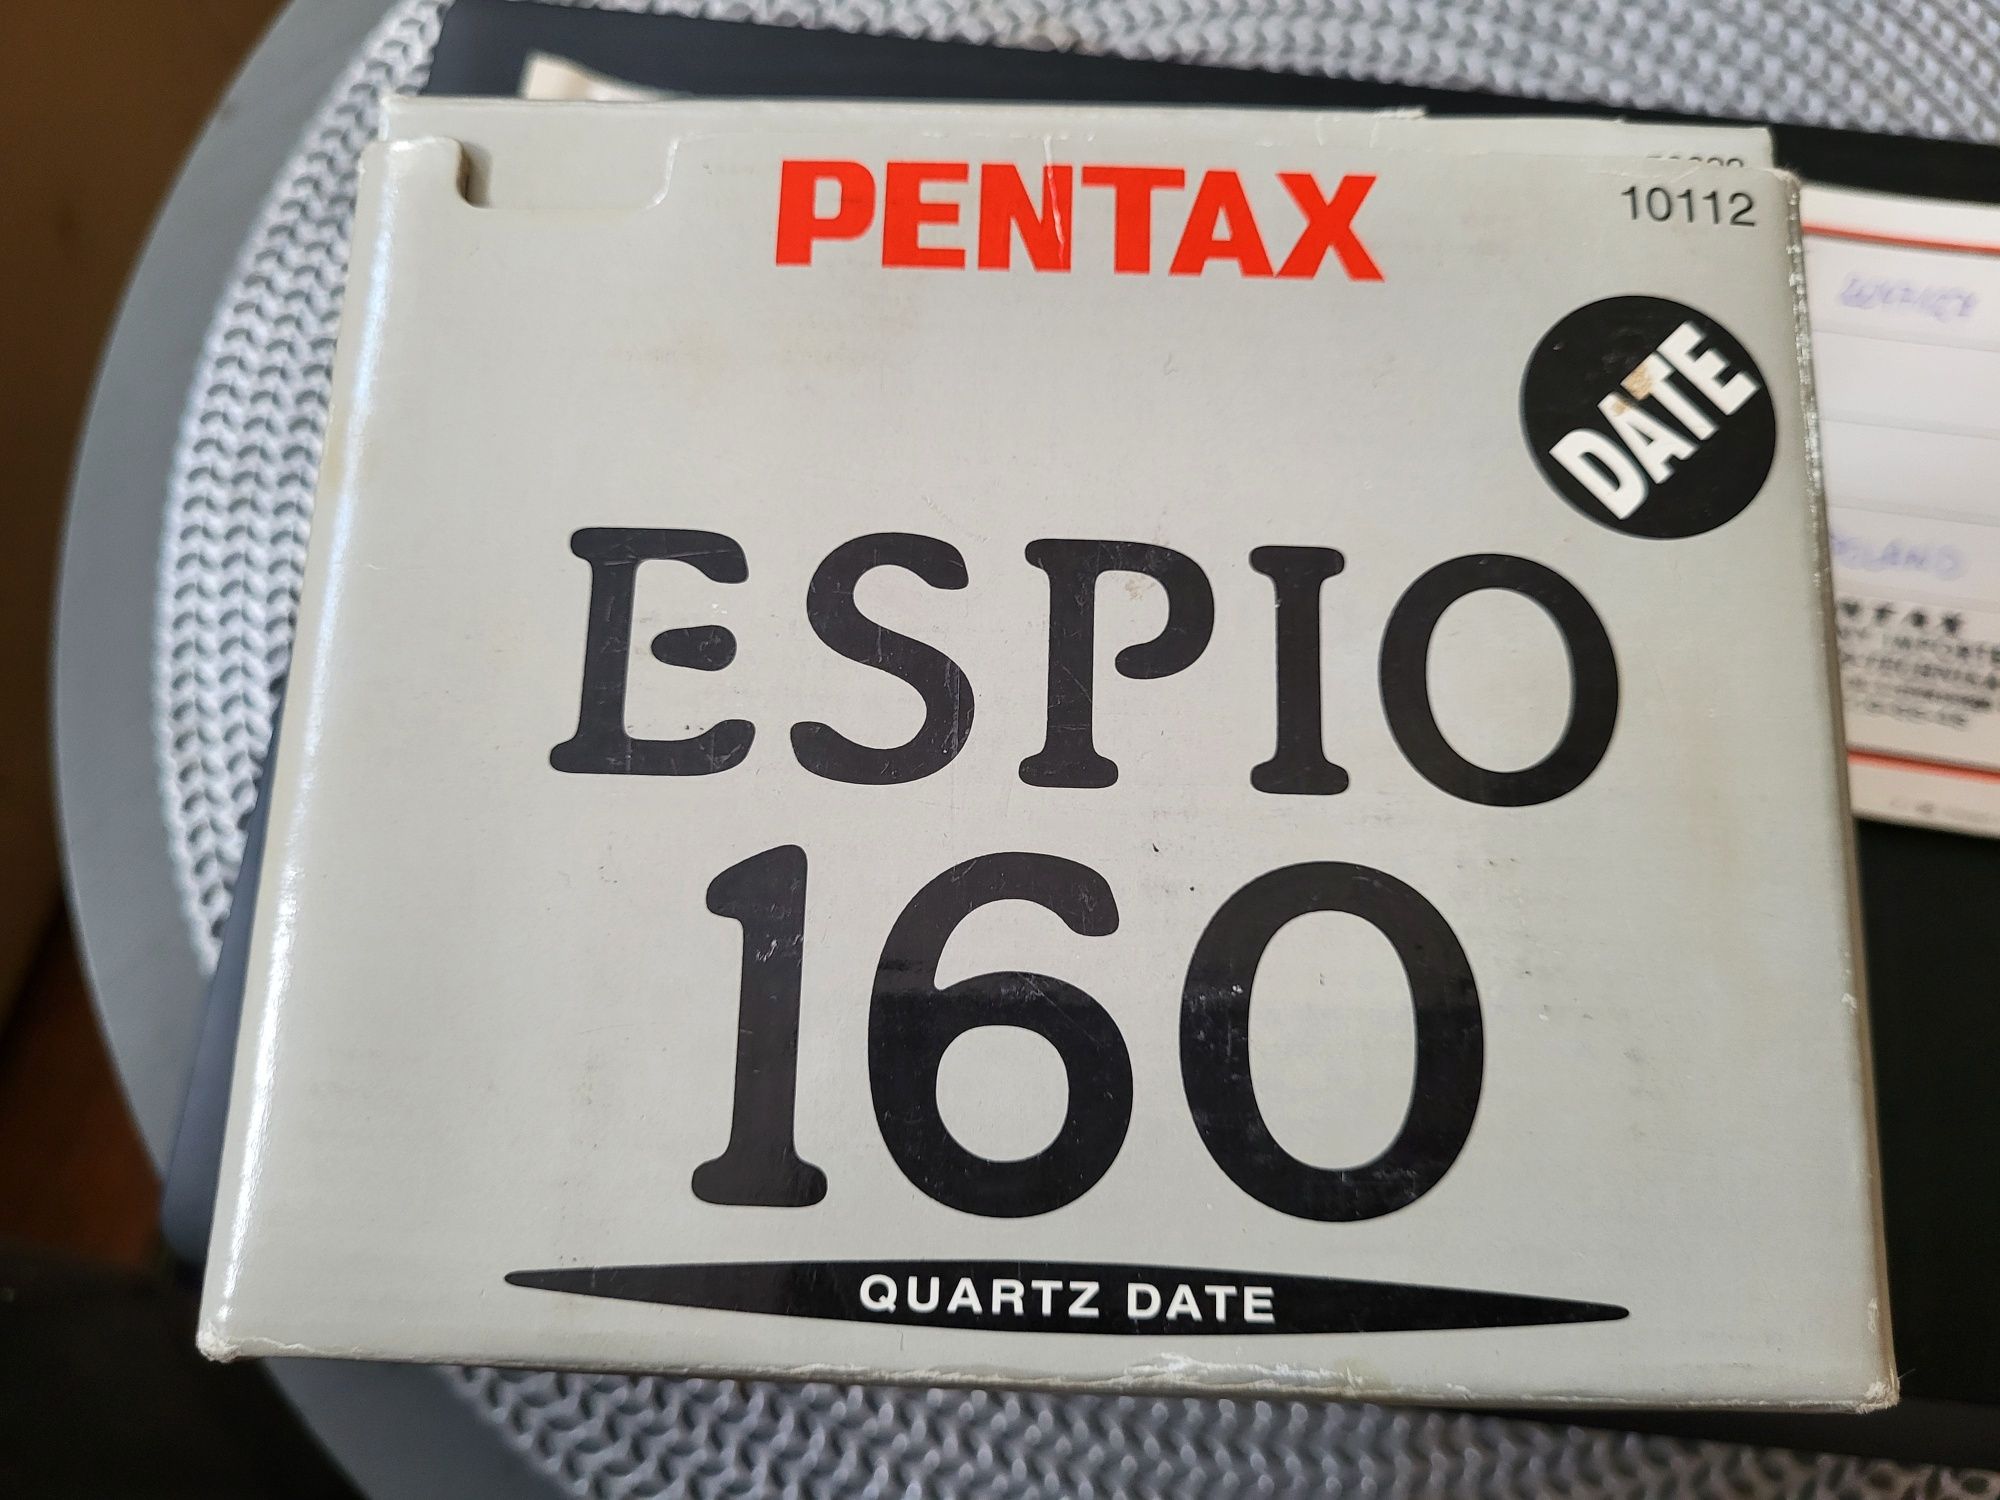 Aparat fotograficzny PENTAX Espio 160 Quartz Date